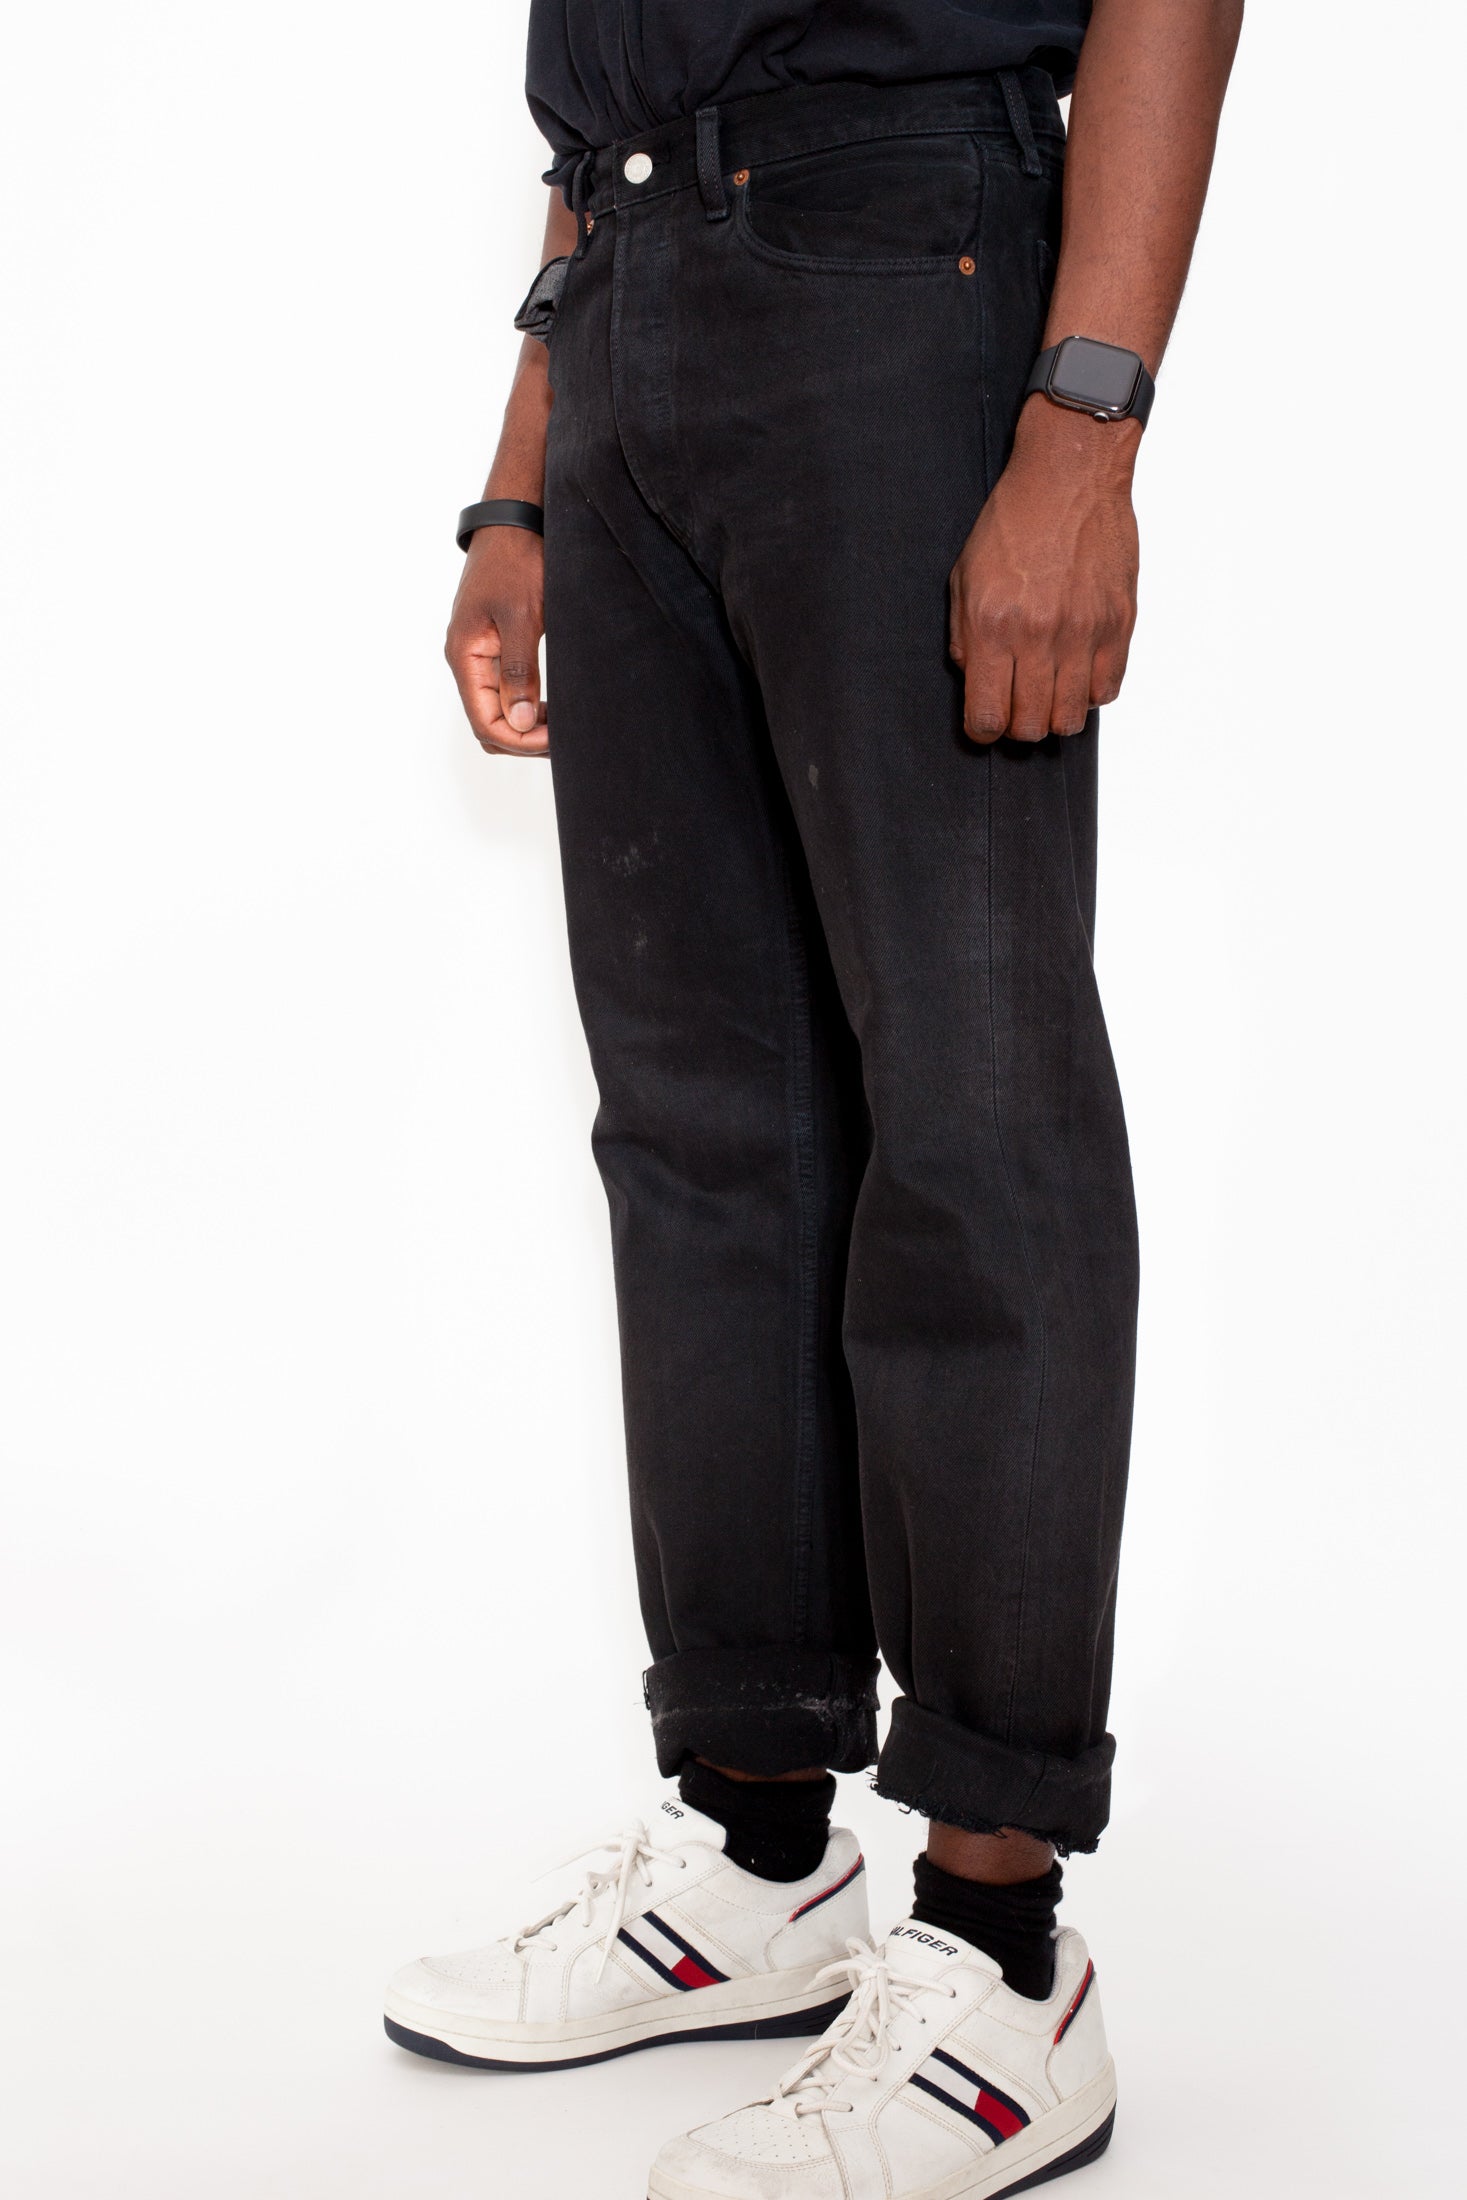 levis vintage black jeans